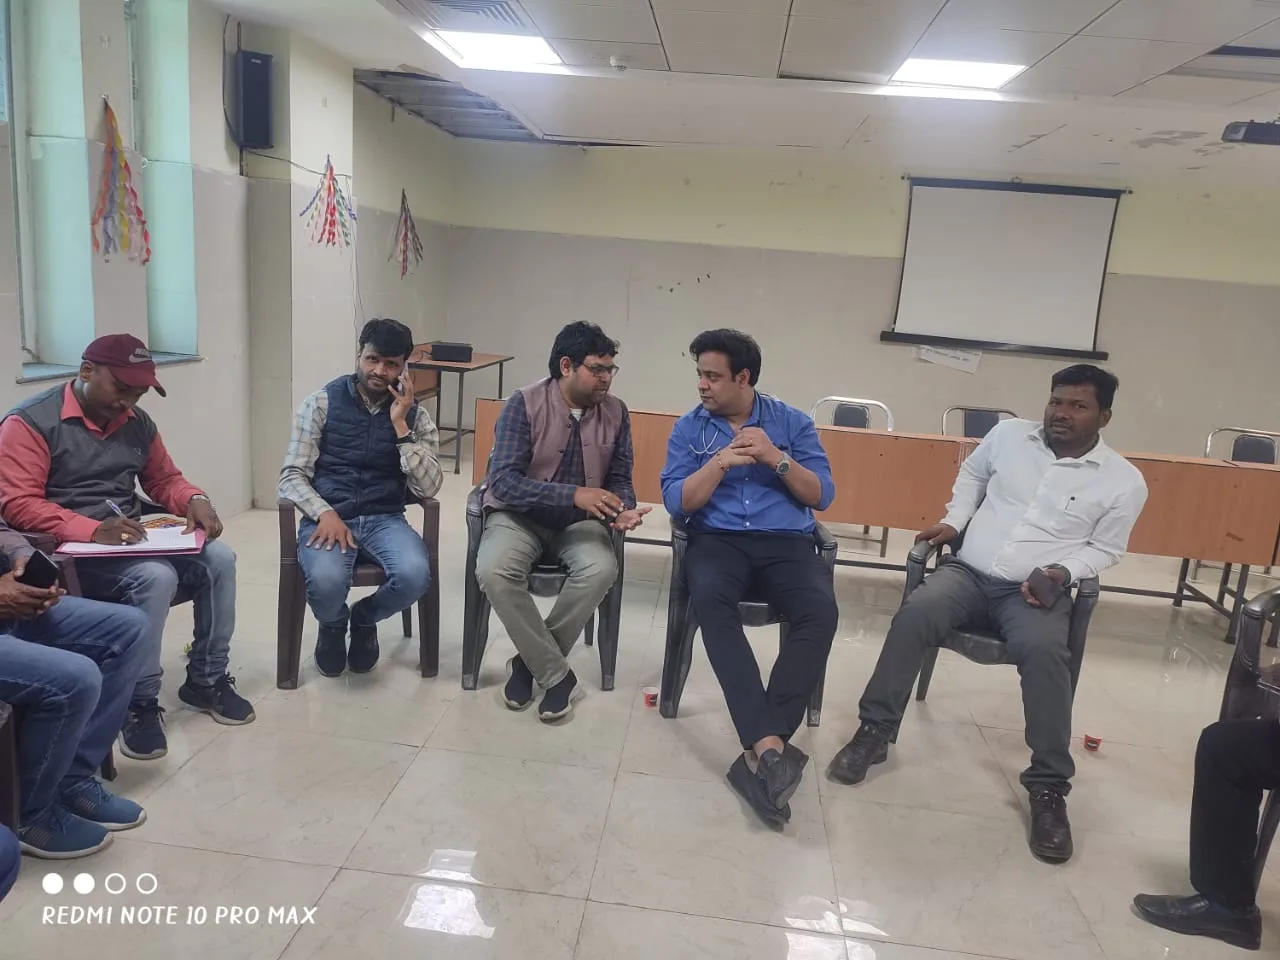 जिला पुरुष चिकित्सालय में तैनात संविदा कर्मचारियों की हुई बैठक | New India Times